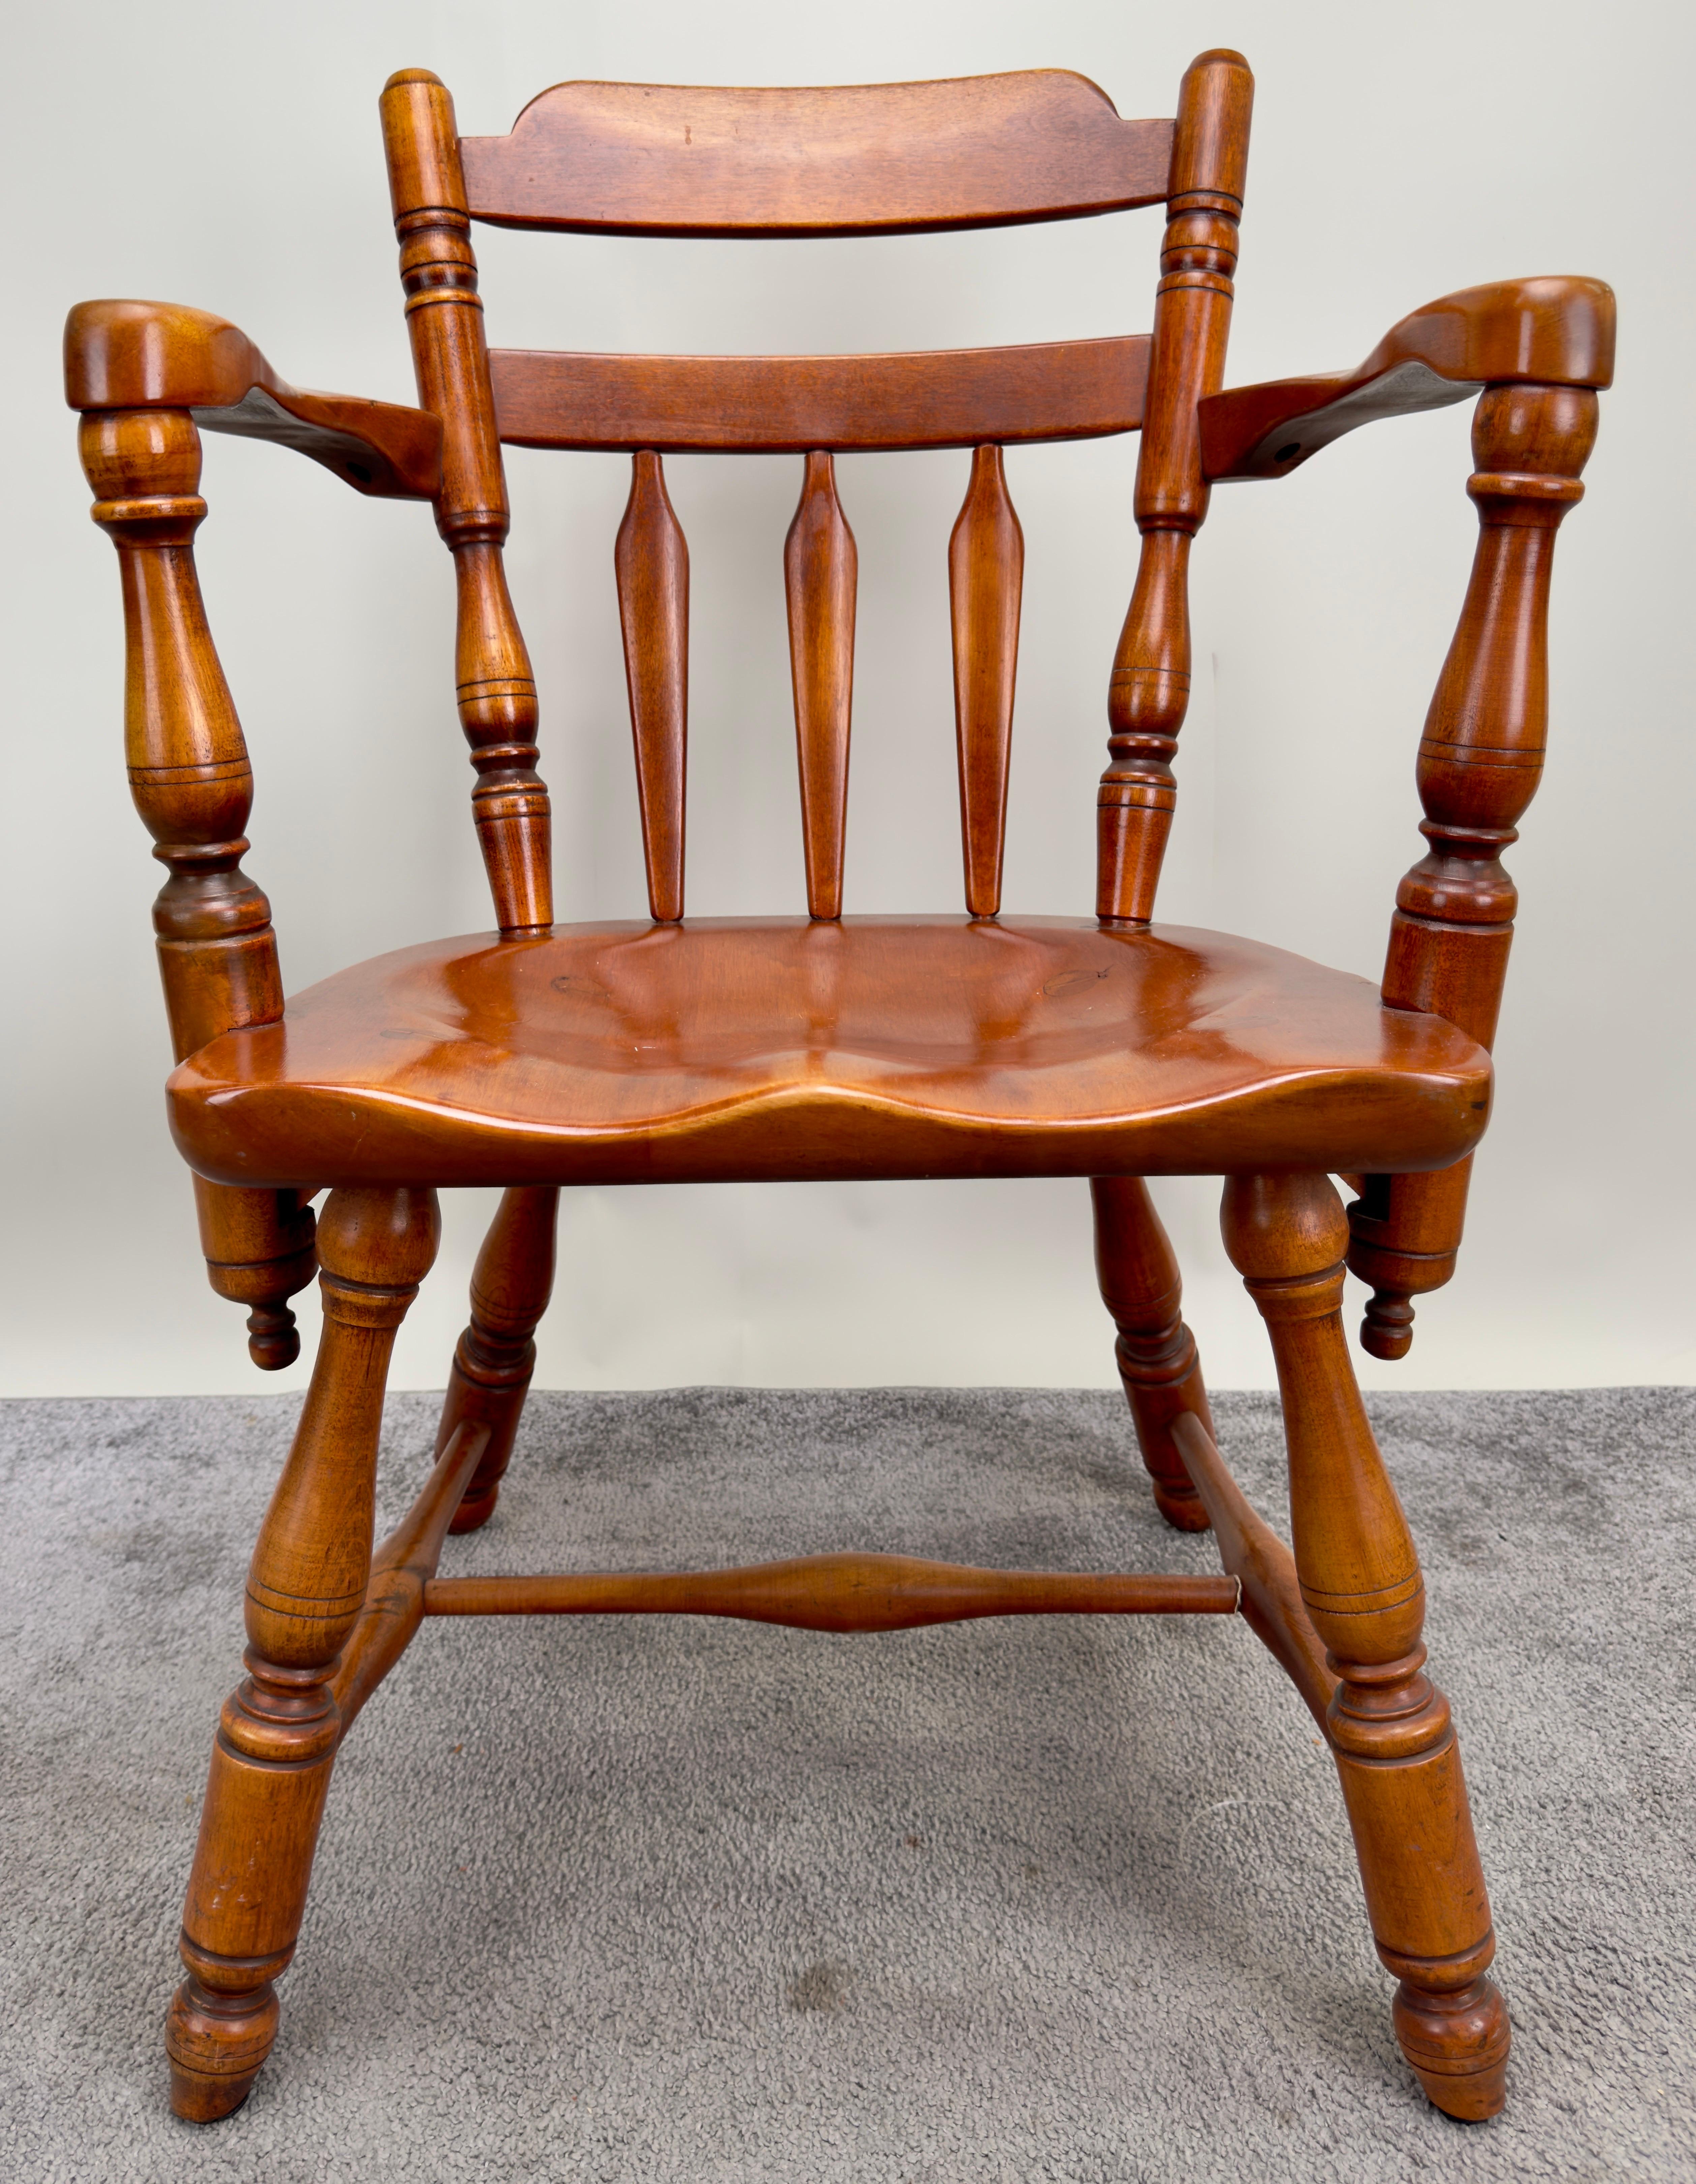 Un fauteuil Americana du milieu du siècle, fabriqué avec fierté en bois d'érable de première qualité. Incarnant l'essence du design colonial Americana, cette chaise témoigne d'un savoir-faire exquis et d'une attention particulière aux détails.
 Les